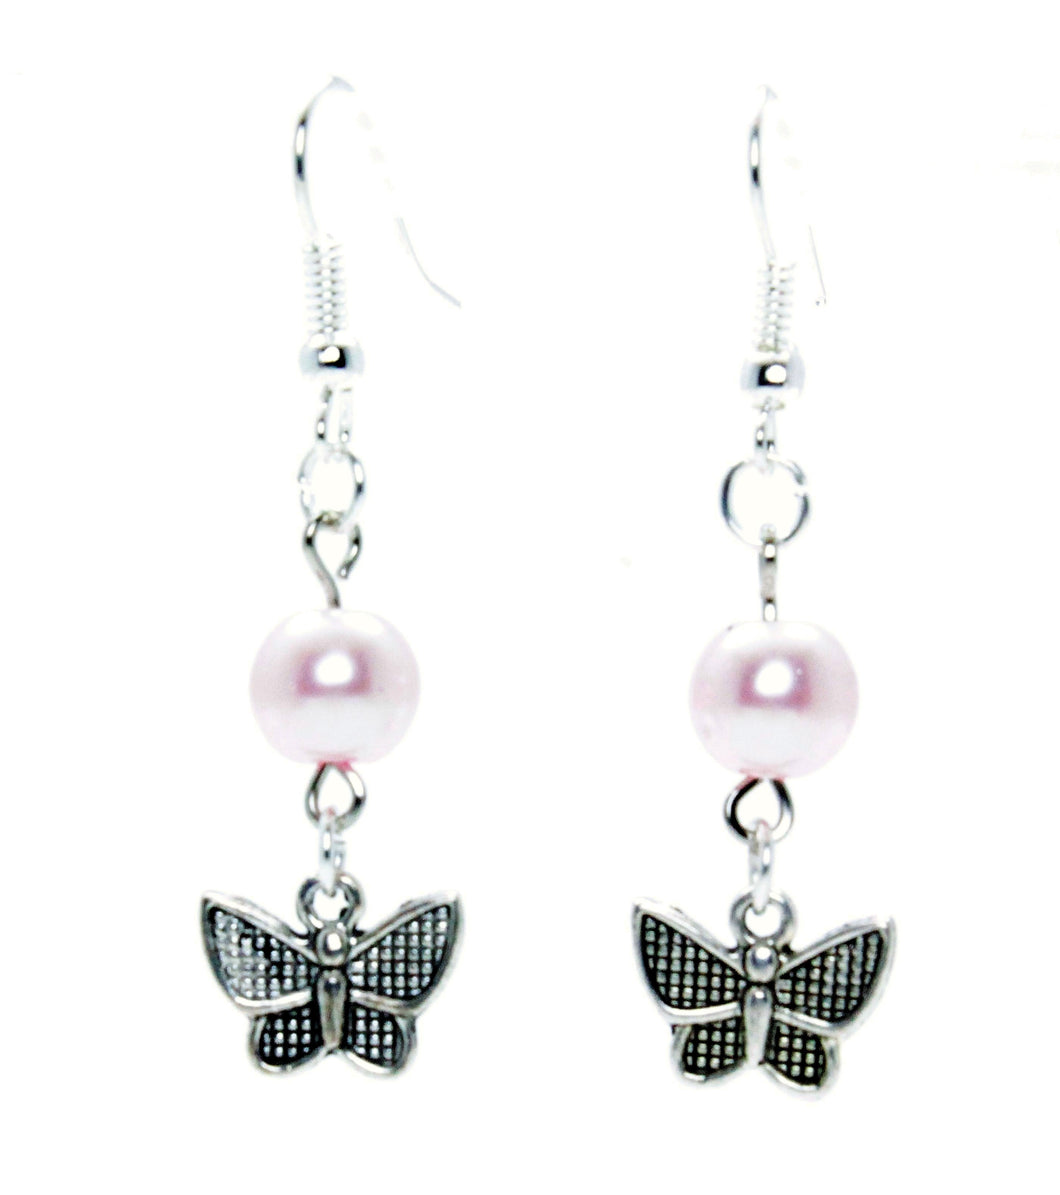 AVBeads Jewelry Charm Earrings Dangle Silver Hook Beaded Pink Butterfly